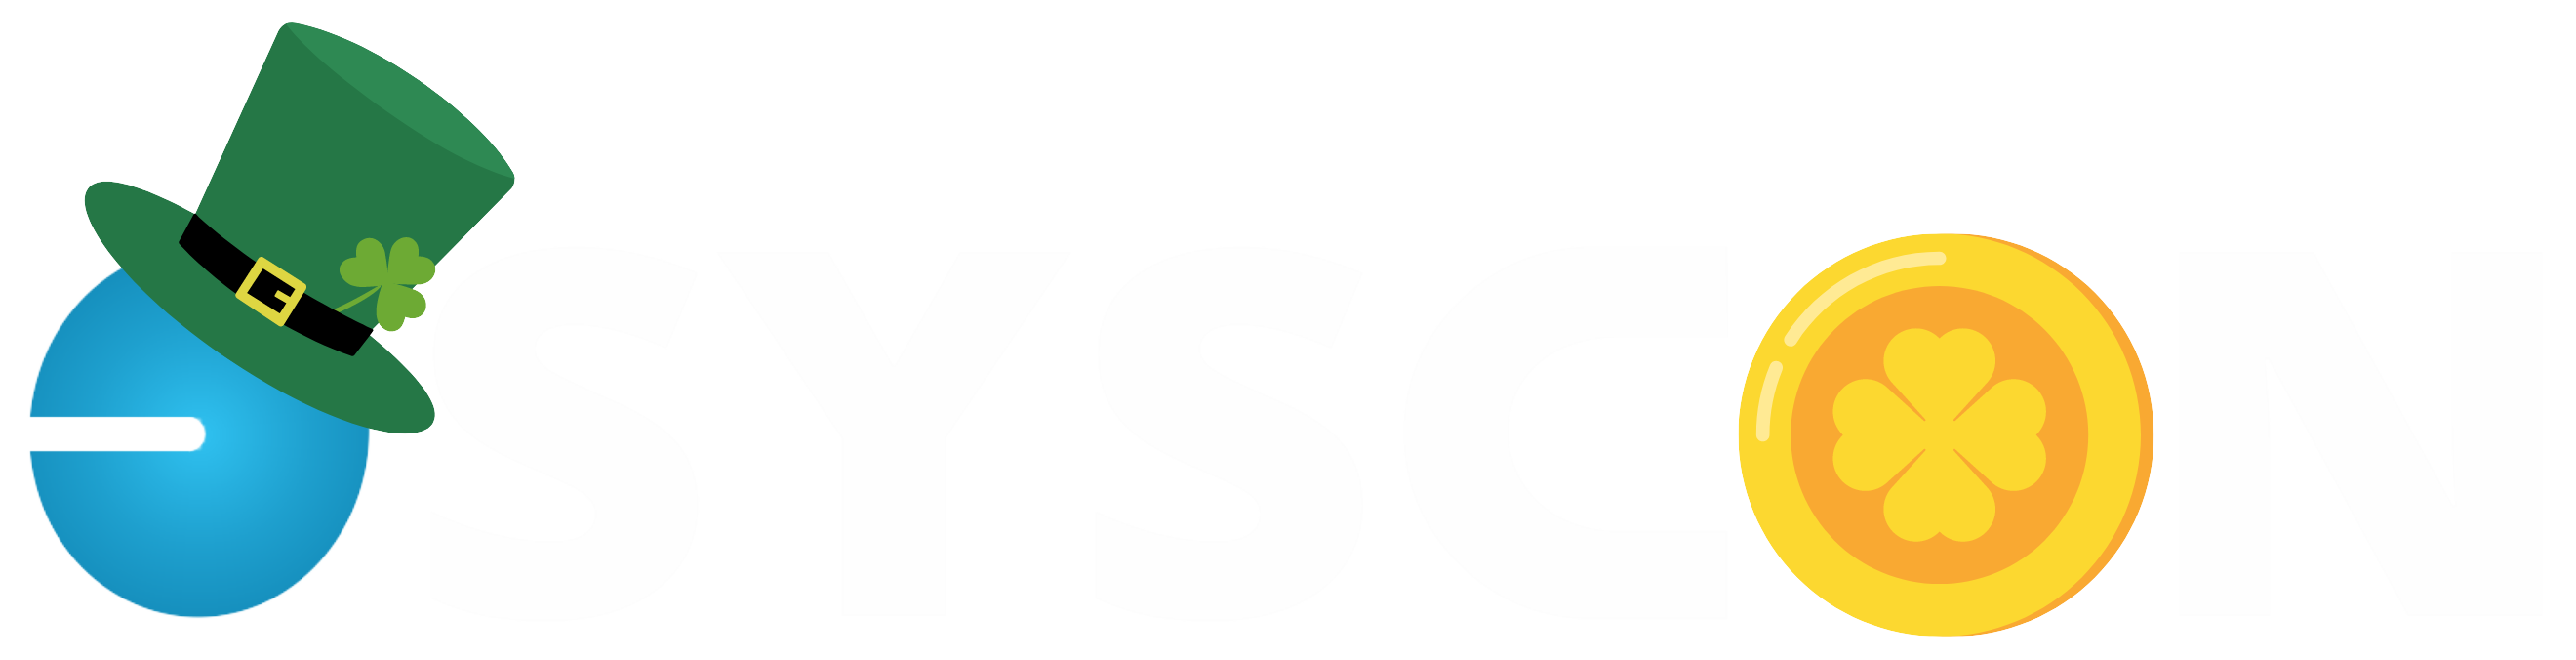 SYSCON